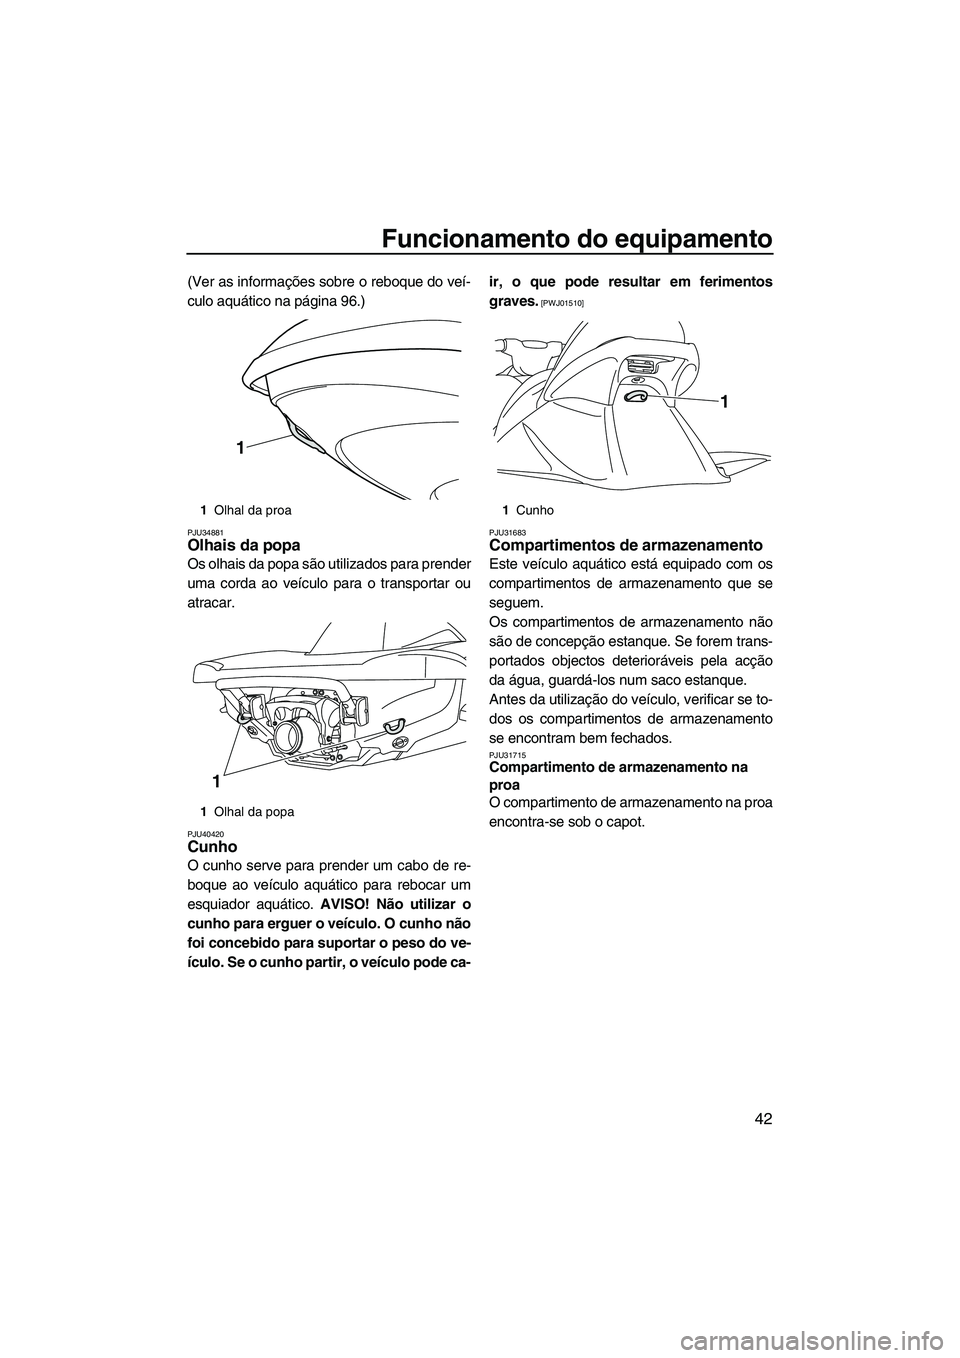 YAMAHA VX SPORT 2013  Manual de utilização (in Portuguese) Funcionamento do equipamento
42
(Ver as informações sobre o reboque do veí-
culo aquático na página 96.)
PJU34881Olhais da popa 
Os olhais da popa são utilizados para prender
uma corda ao veícu